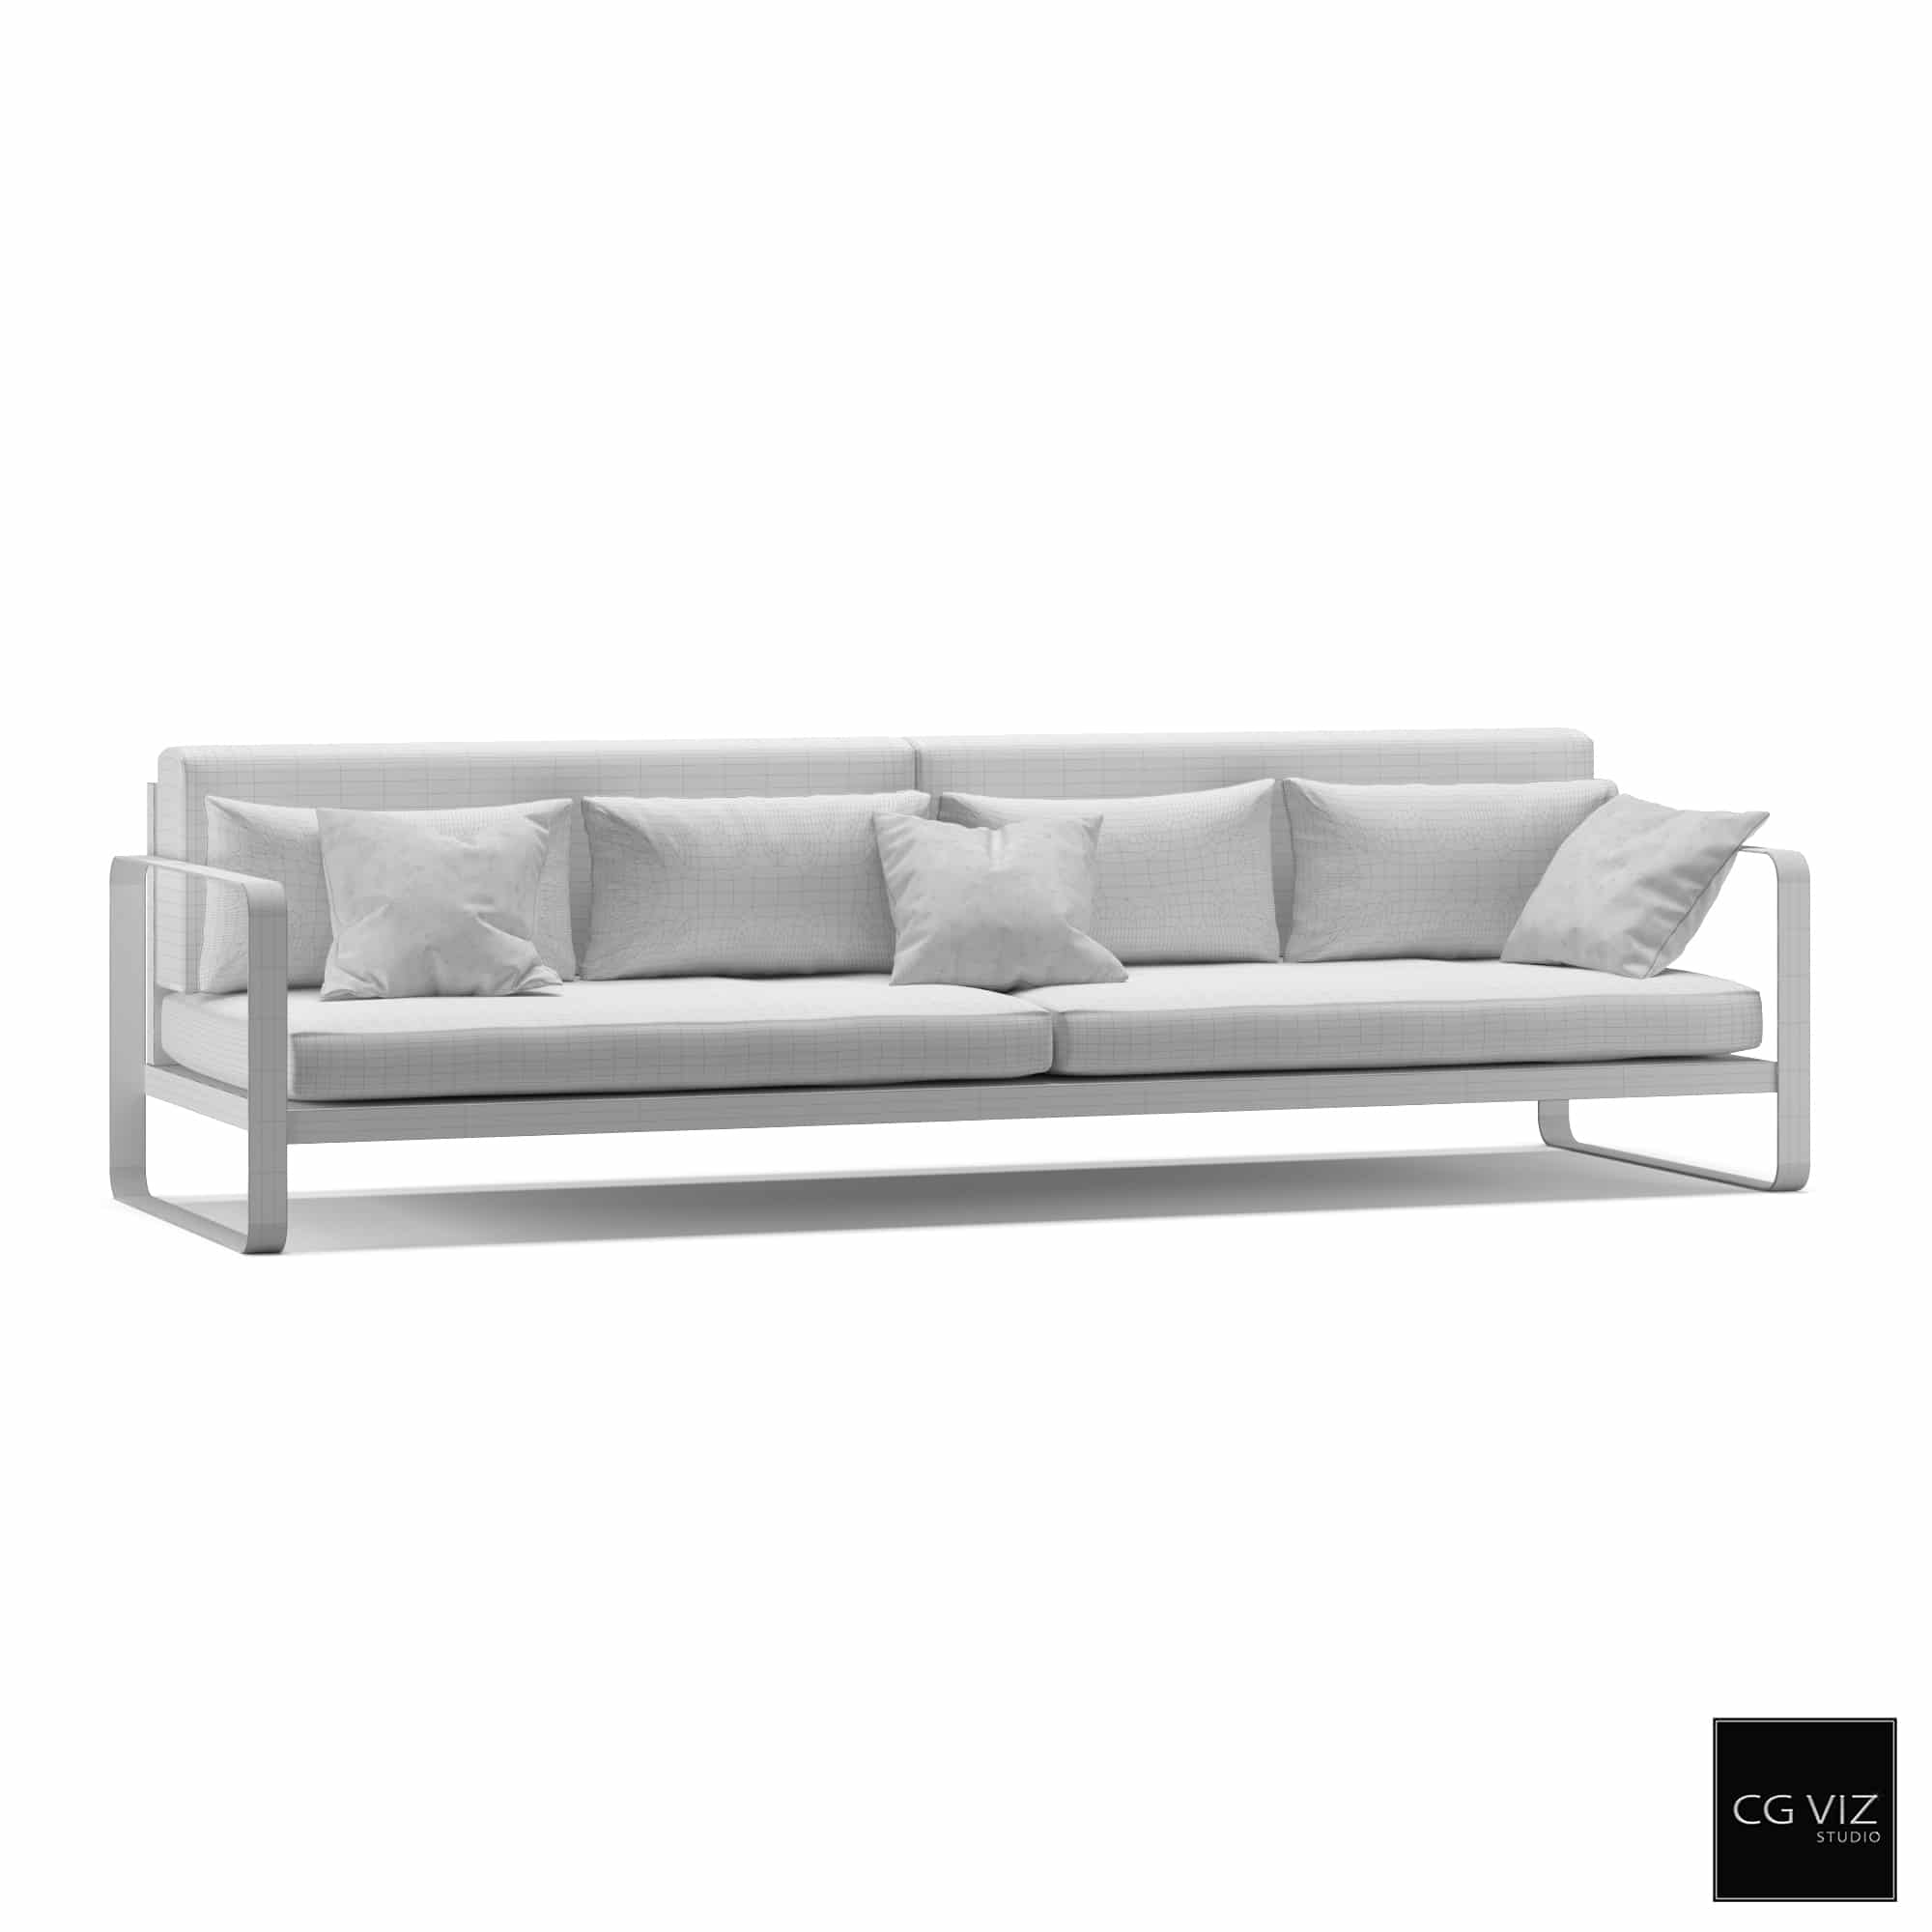 Outdoor Sofa CGVAM_001 (3D Model) - CG Viz Studio | 3D Rende